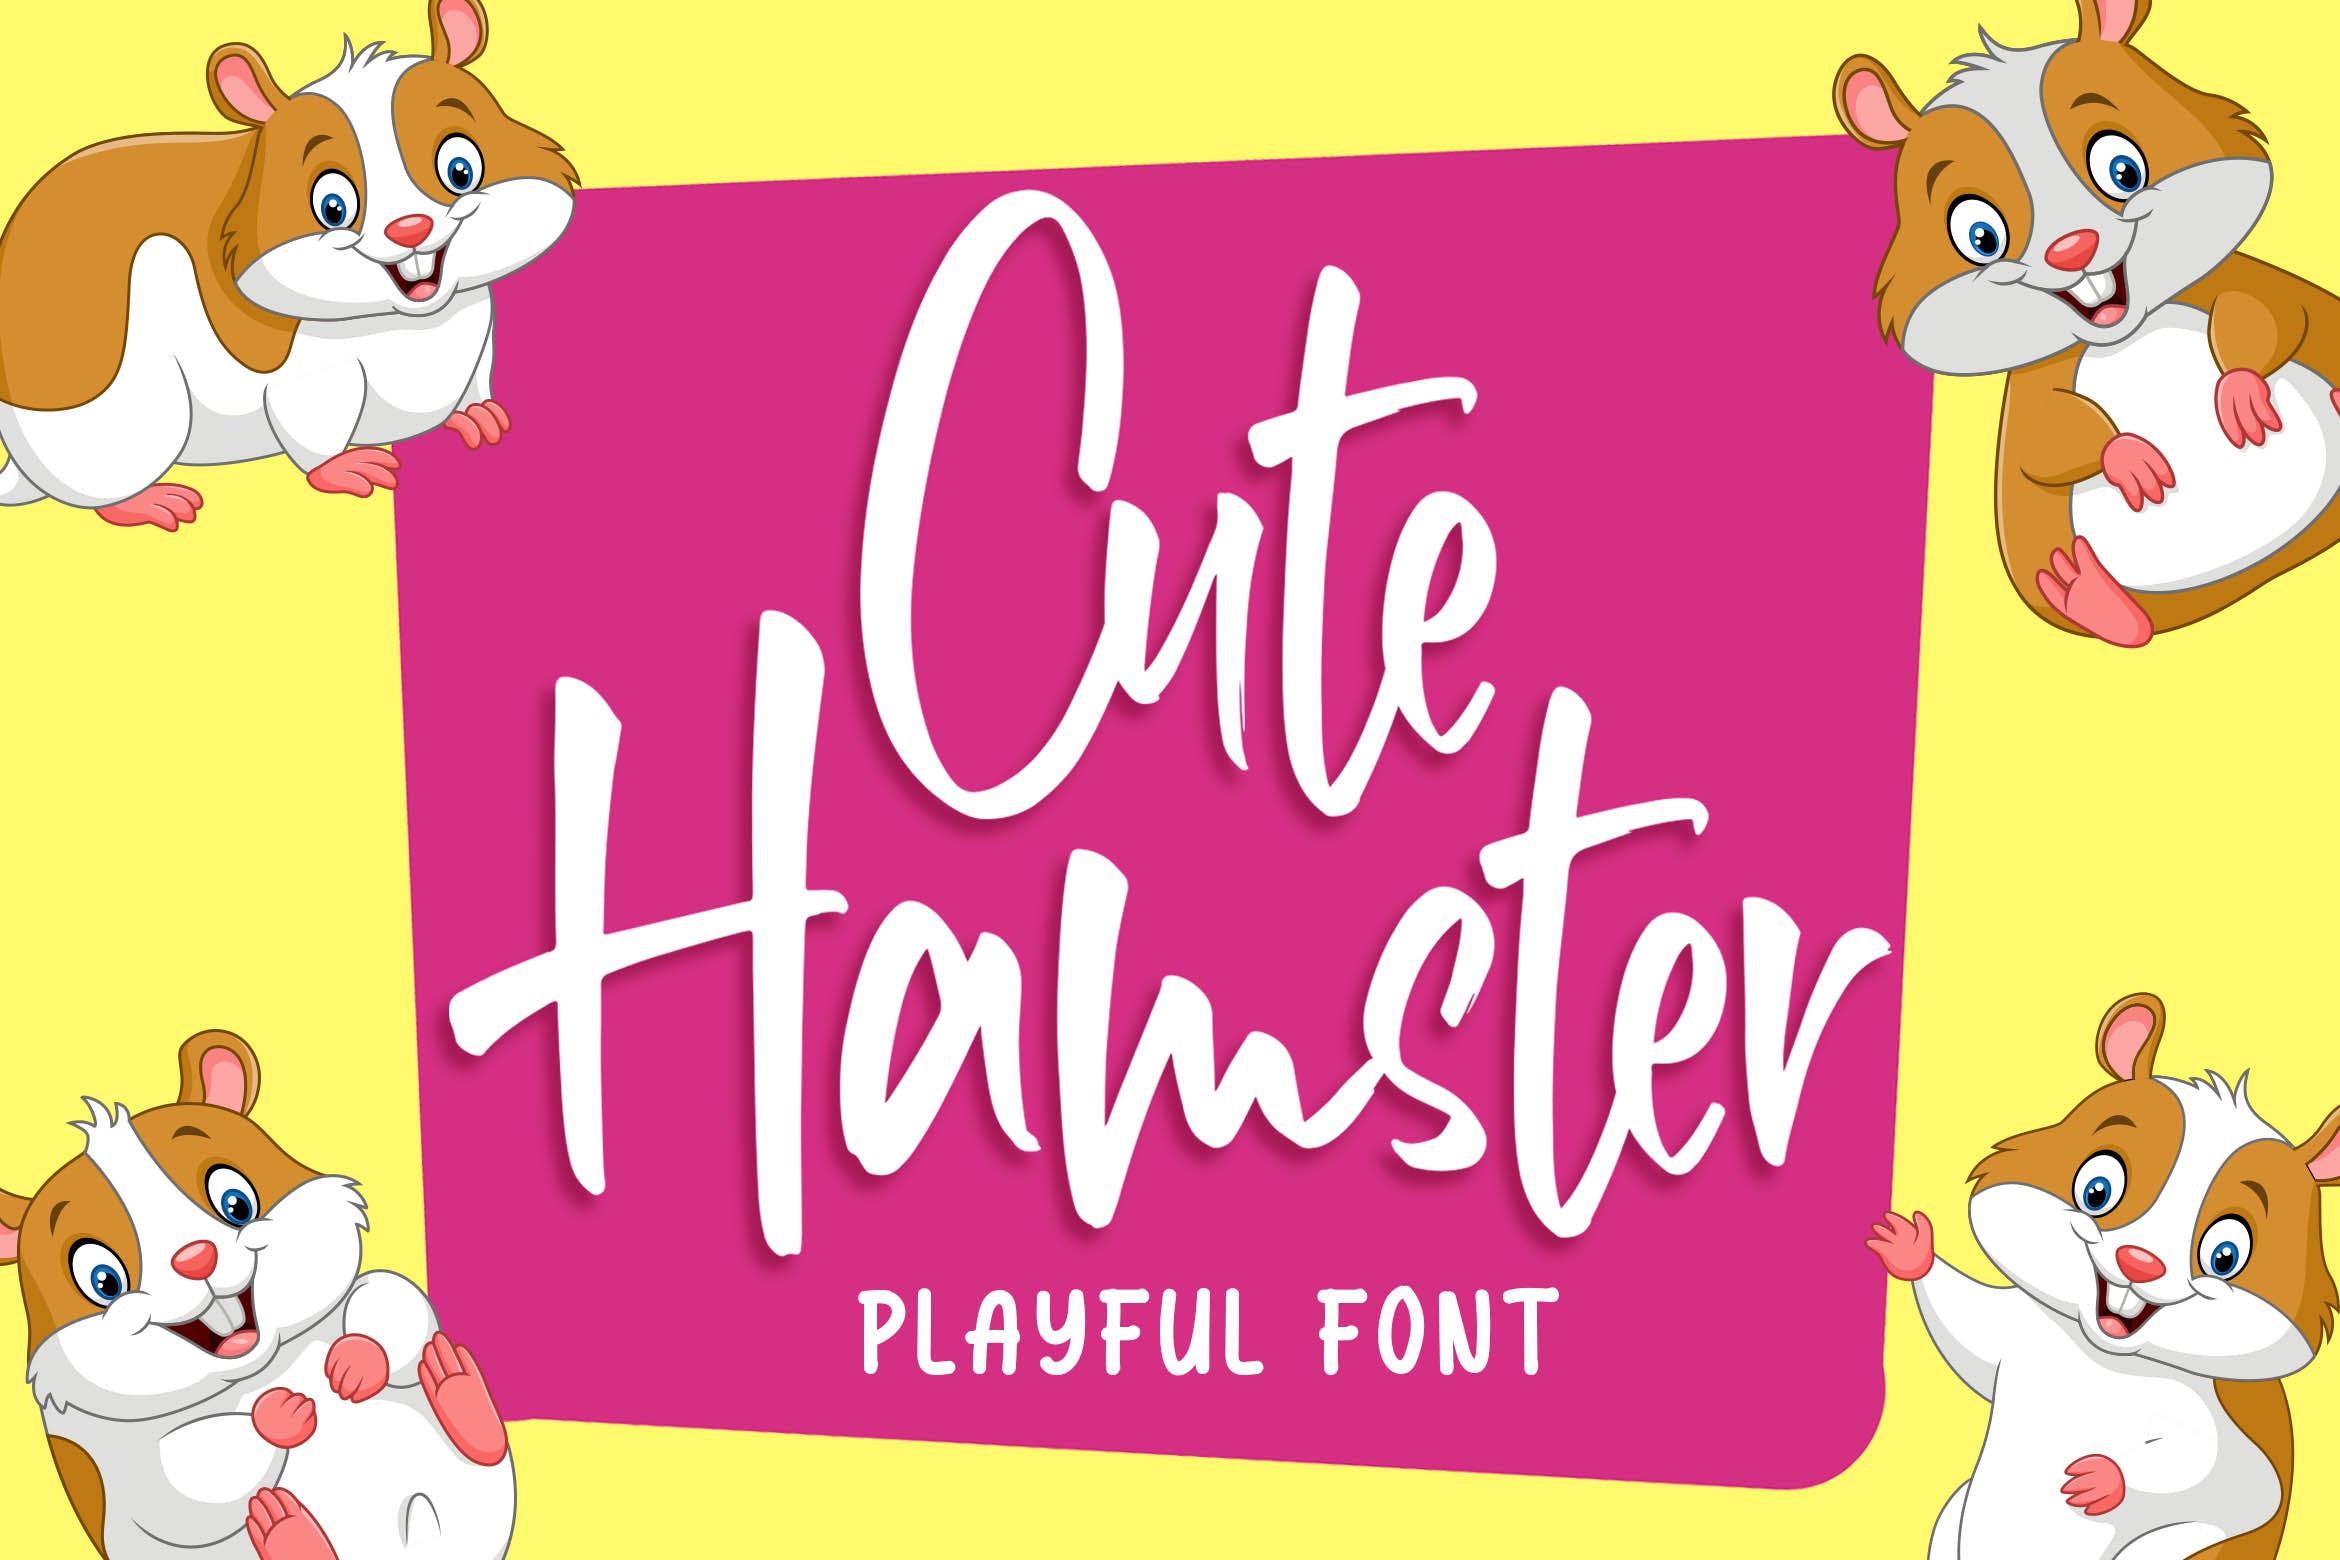 俏皮可爱风格英文手写装饰字体蚂蚁素材精选 Cute Hamster – Playful Font插图